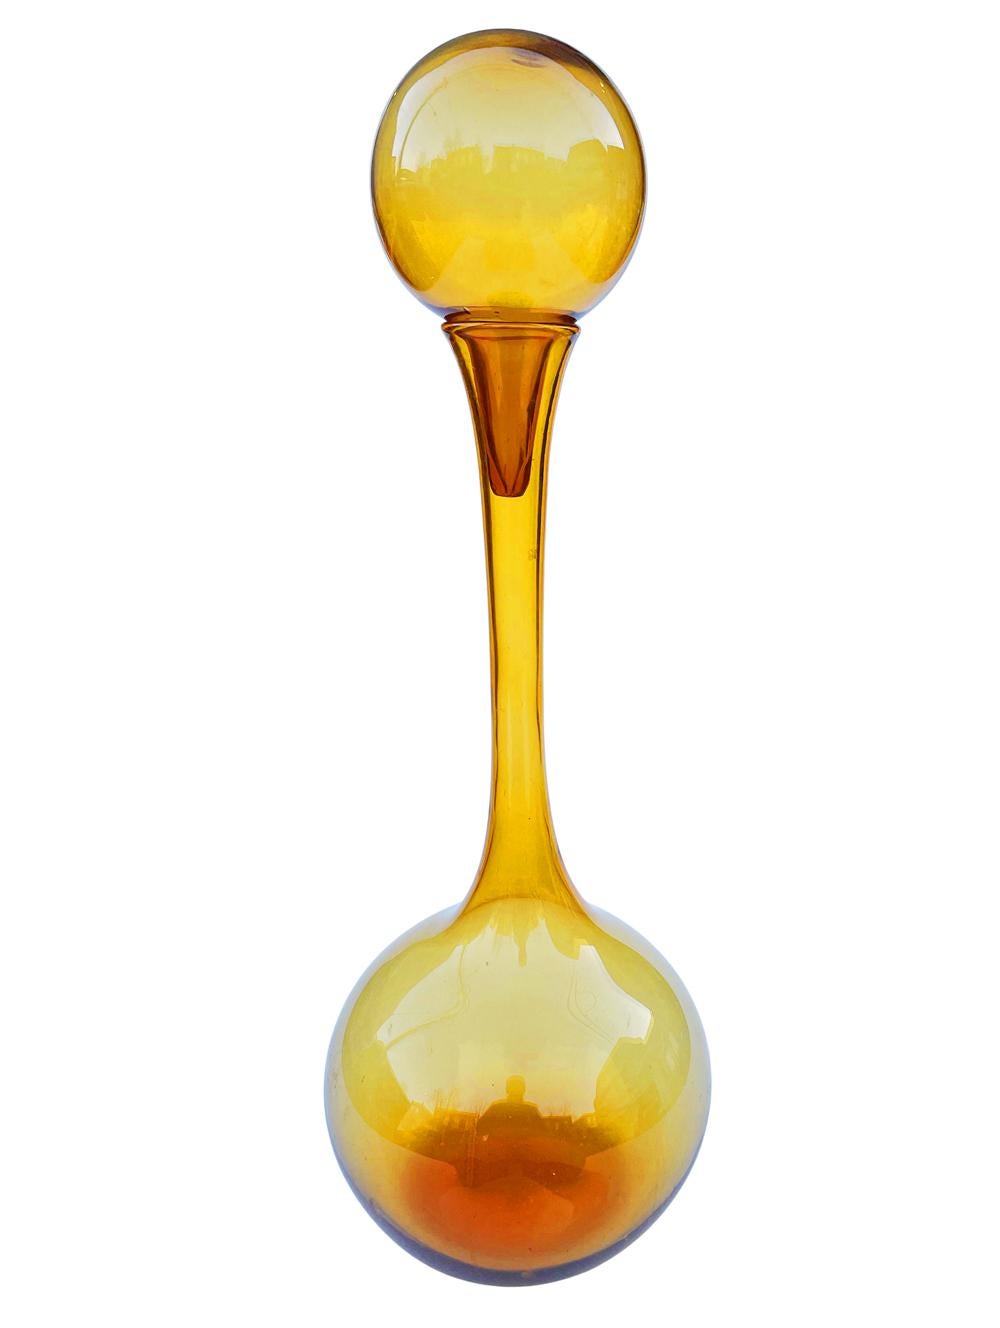 Une carafe en verre massive et impressionnante attribuée à Empoli en Italie. Très proche du style du verre Blenko. Il s'agit d'un verre ambré soufflé à la main sculptural avec un grand bouchon.